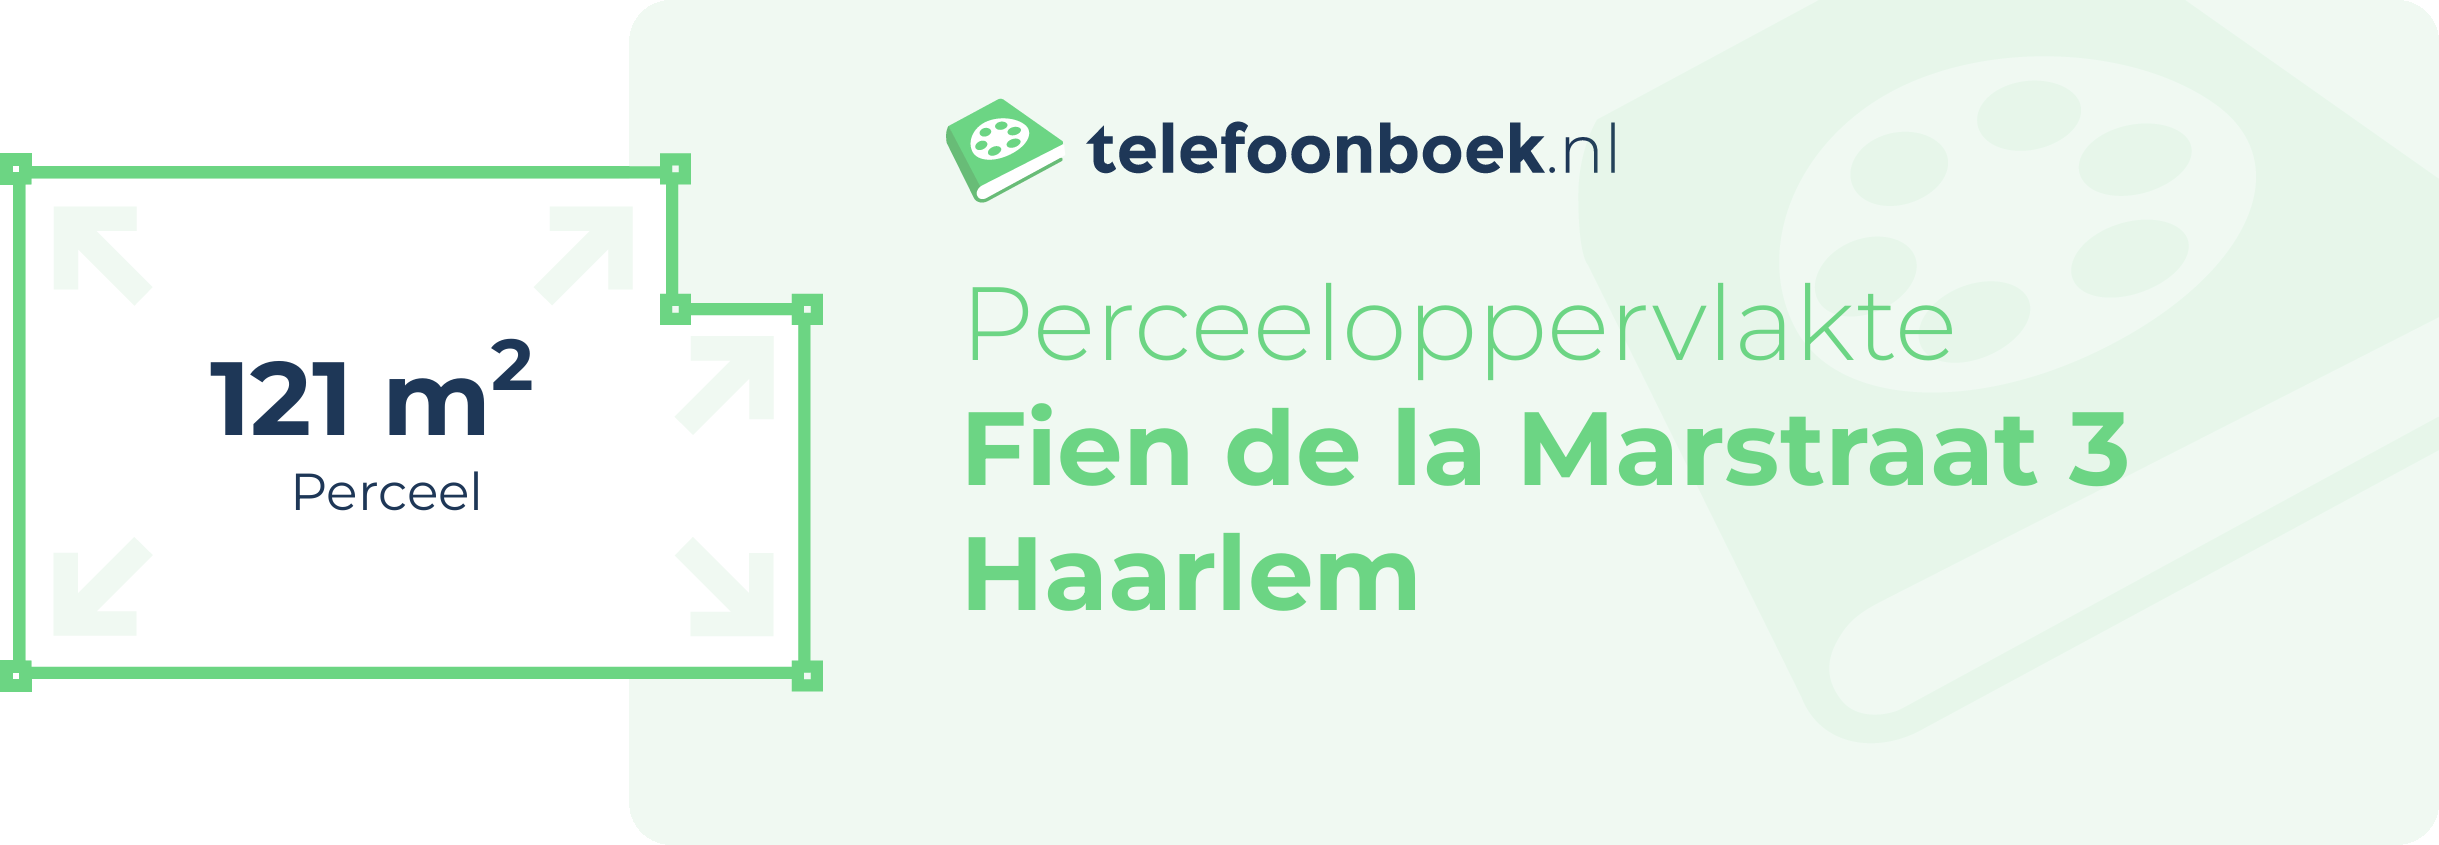 Perceeloppervlakte Fien De La Marstraat 3 Haarlem